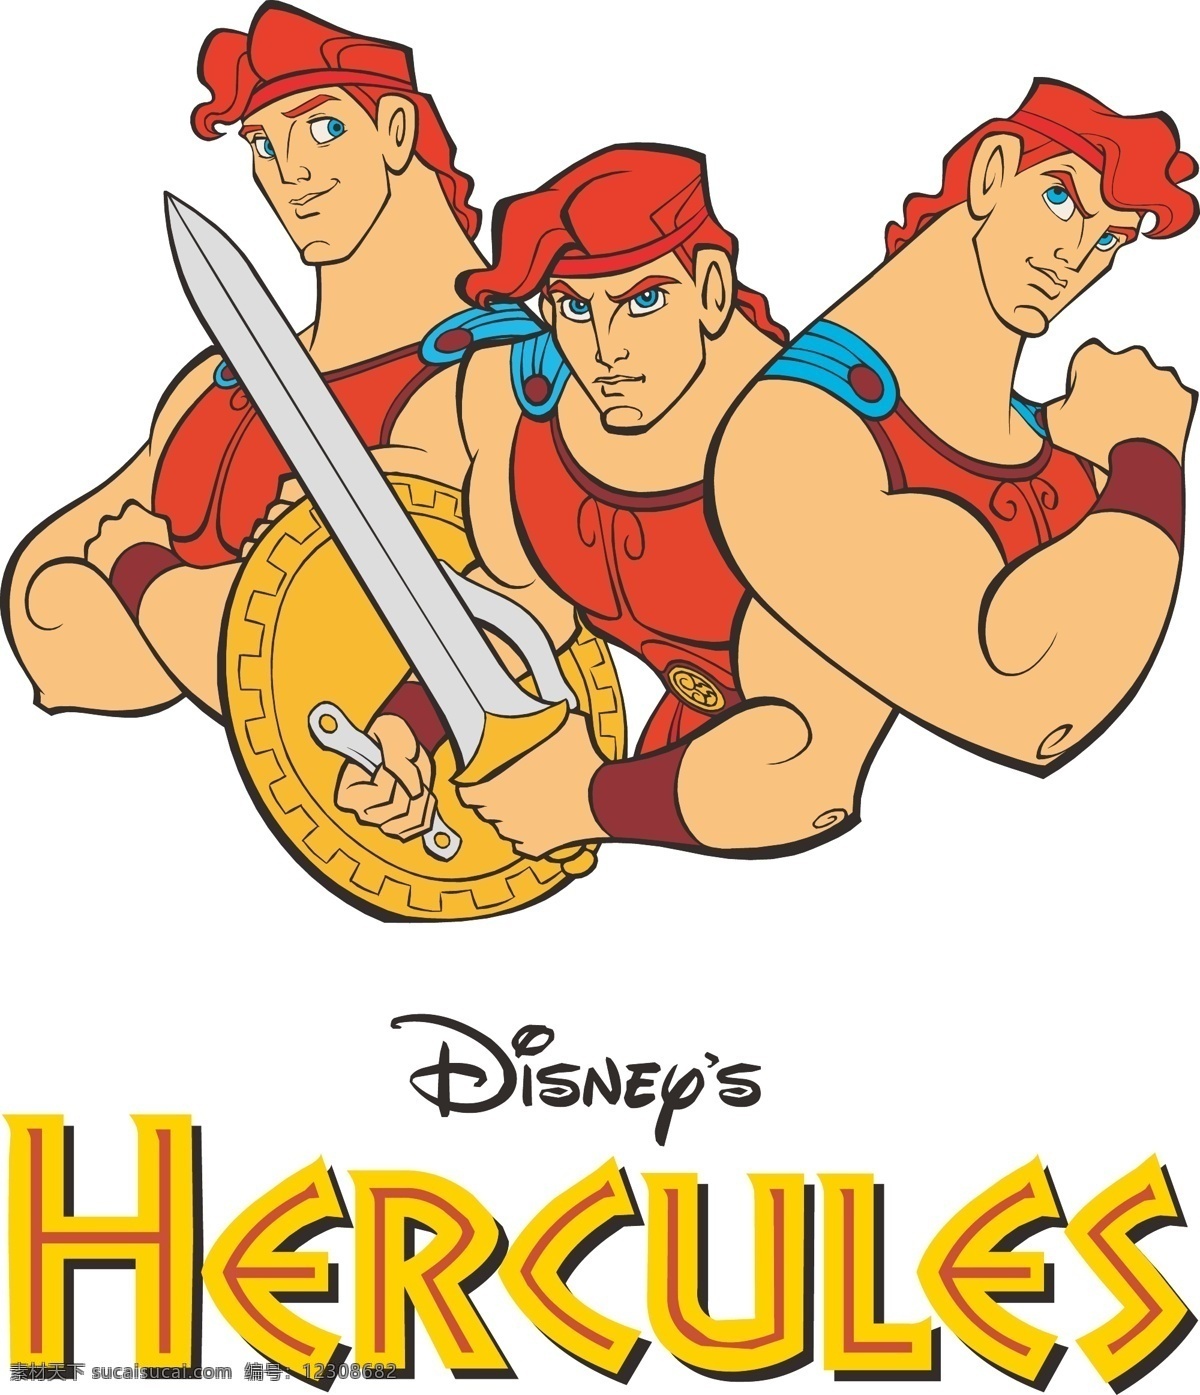 hercules 海格力斯 赫拉克勒斯 希腊神话 英雄 剑 披风 盾牌 肌肉 宙斯之子 迪士尼 logo 动画 漫画人物 大力神 矢量卡通 卡通设计 矢量